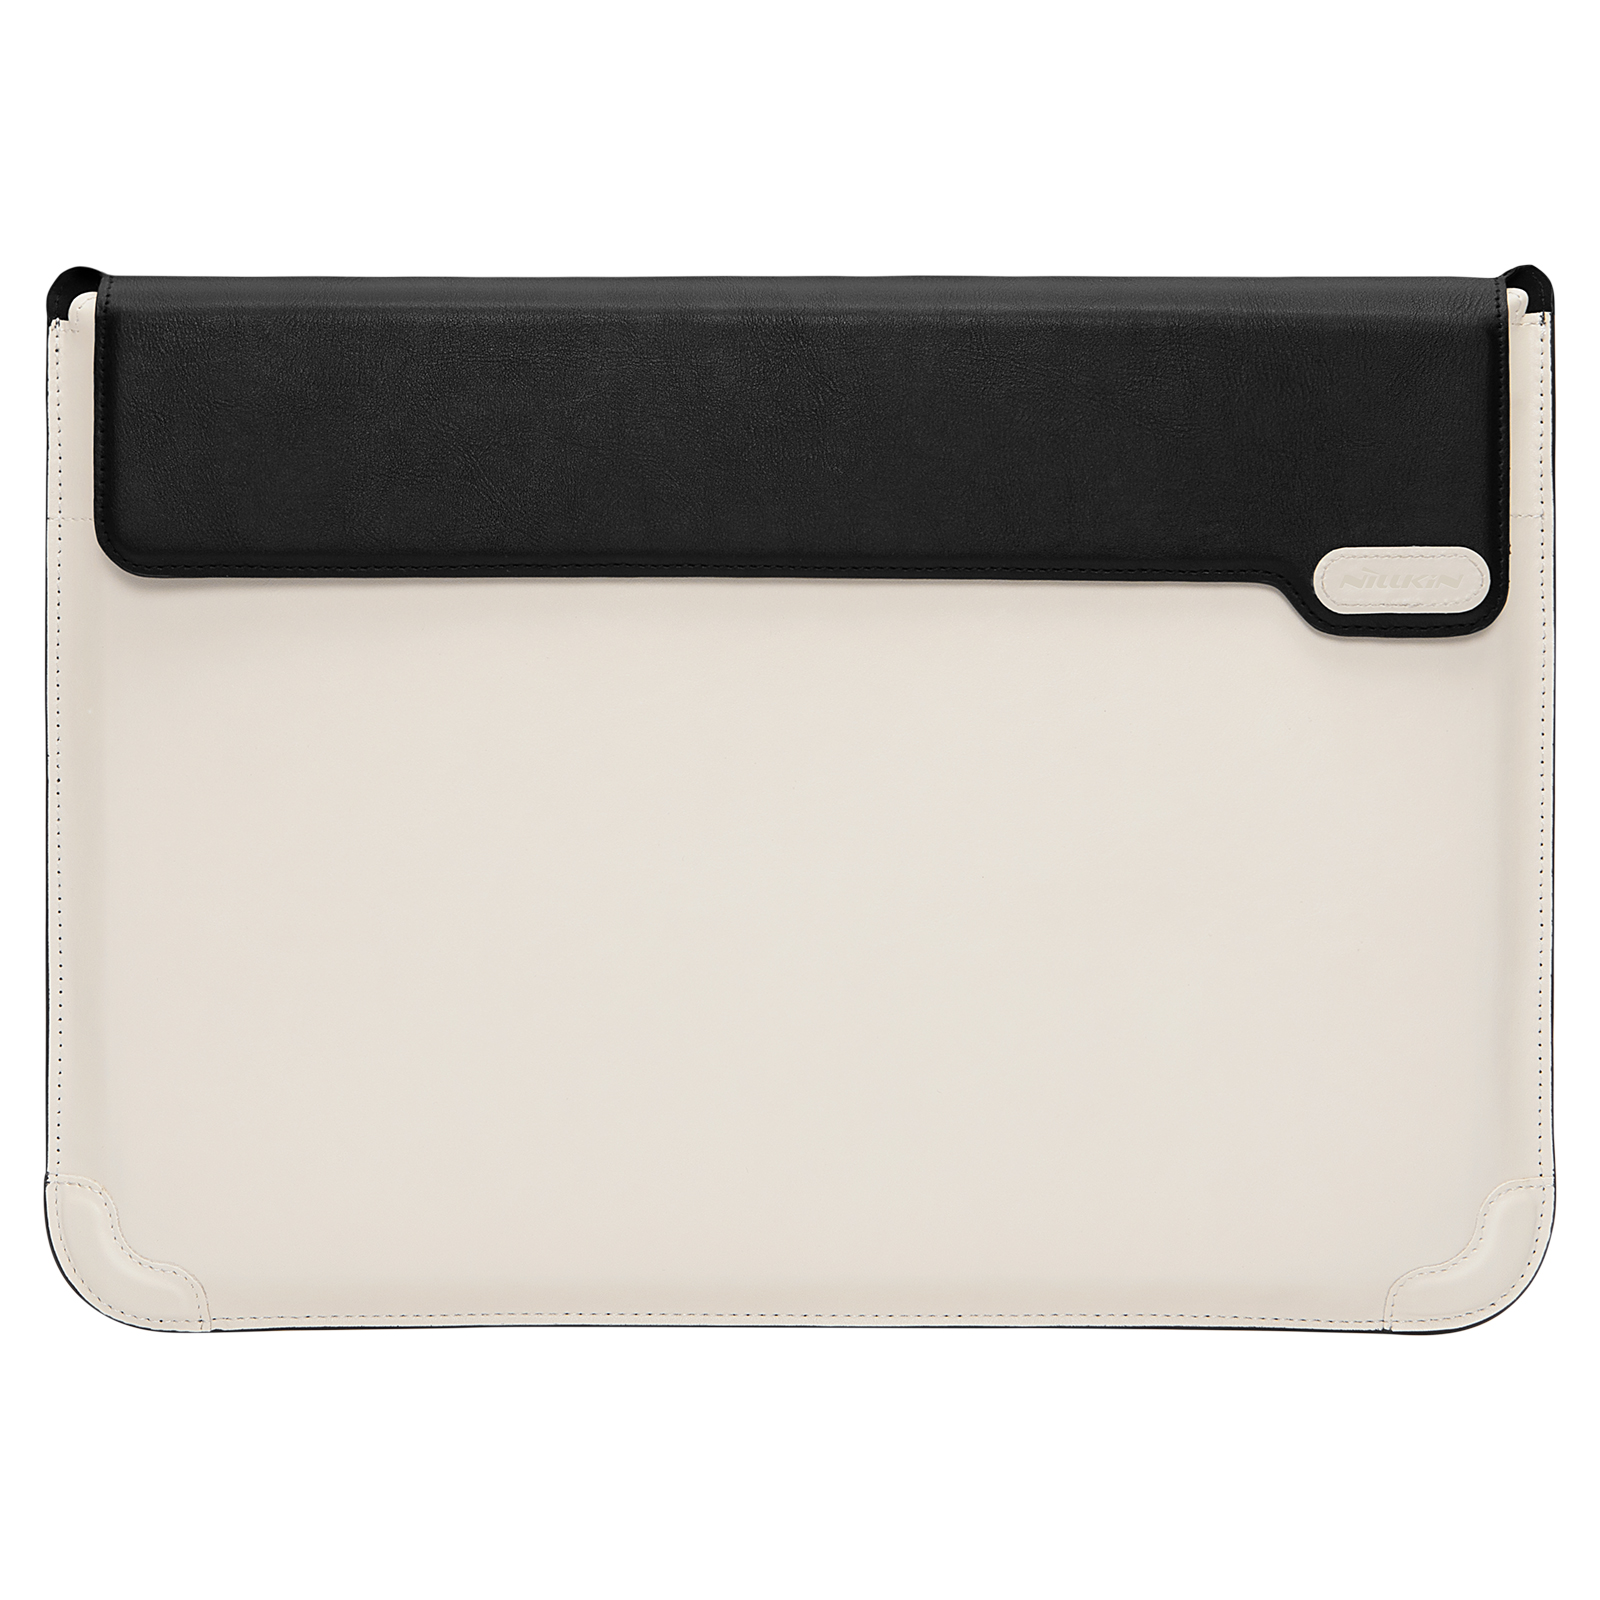 Nillkin Versatile laptop sleeve, táska 16'' 3in1 kihajtható támasszal és egérpaddal fekete/fehér - Vízszintes